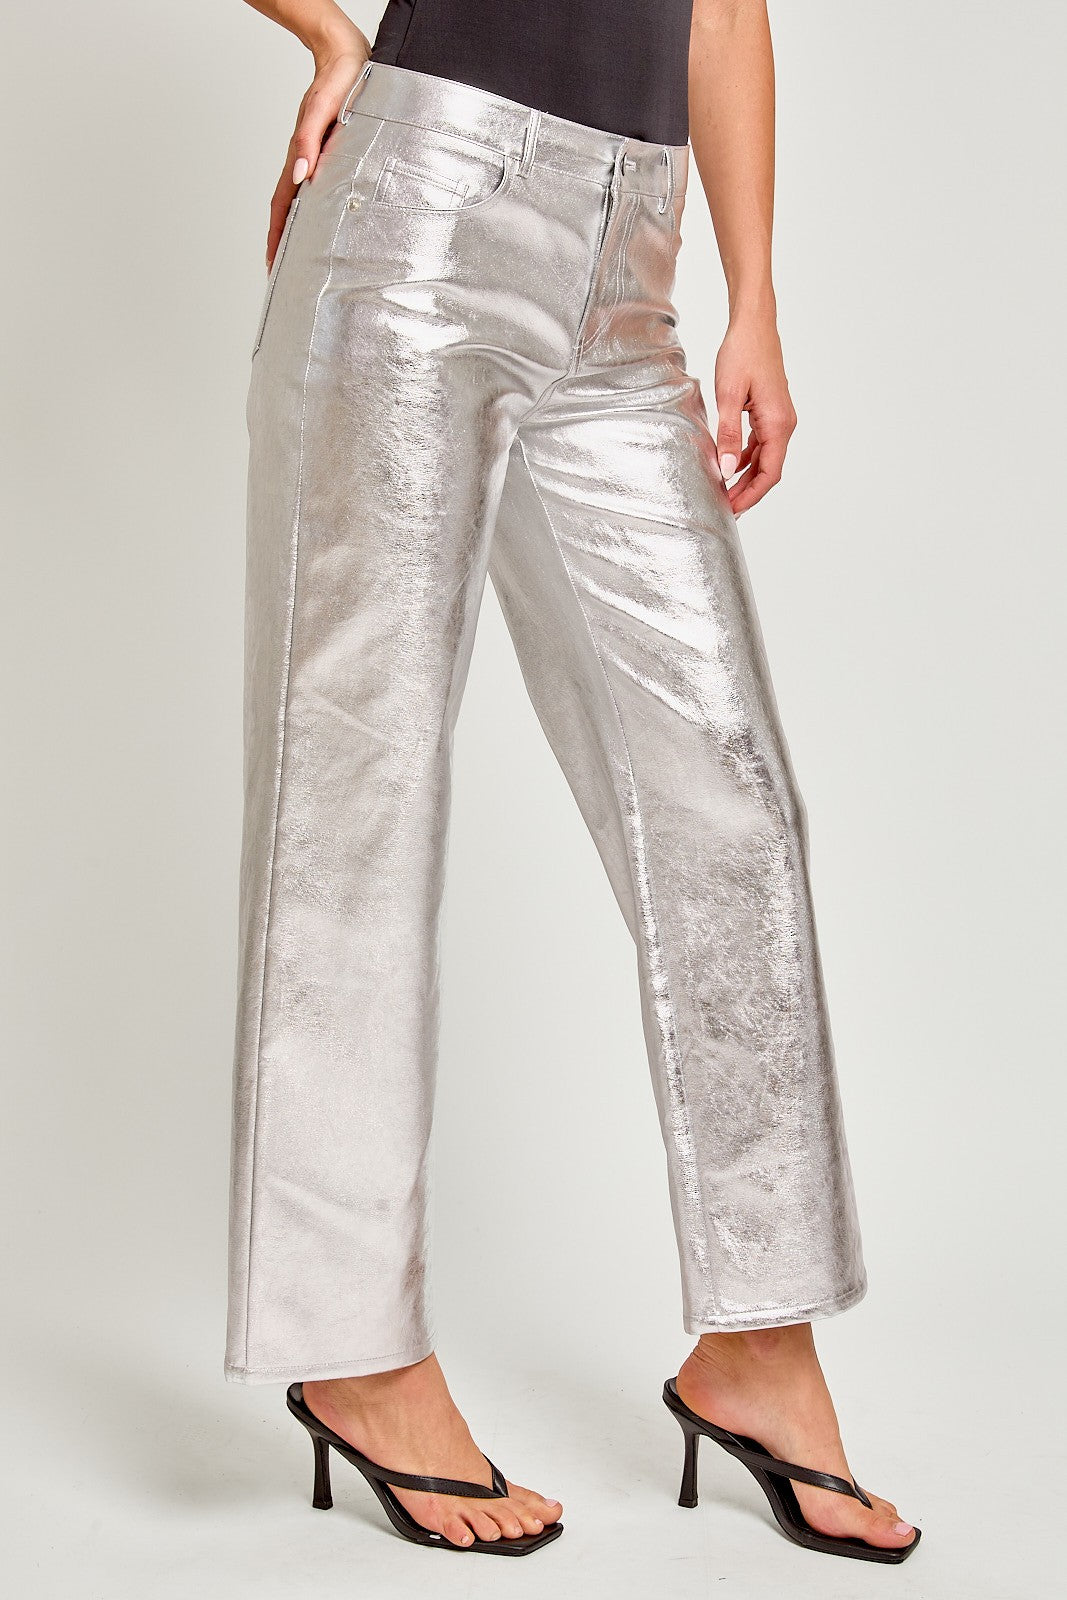 Faux Leather Silver Metallic Pants